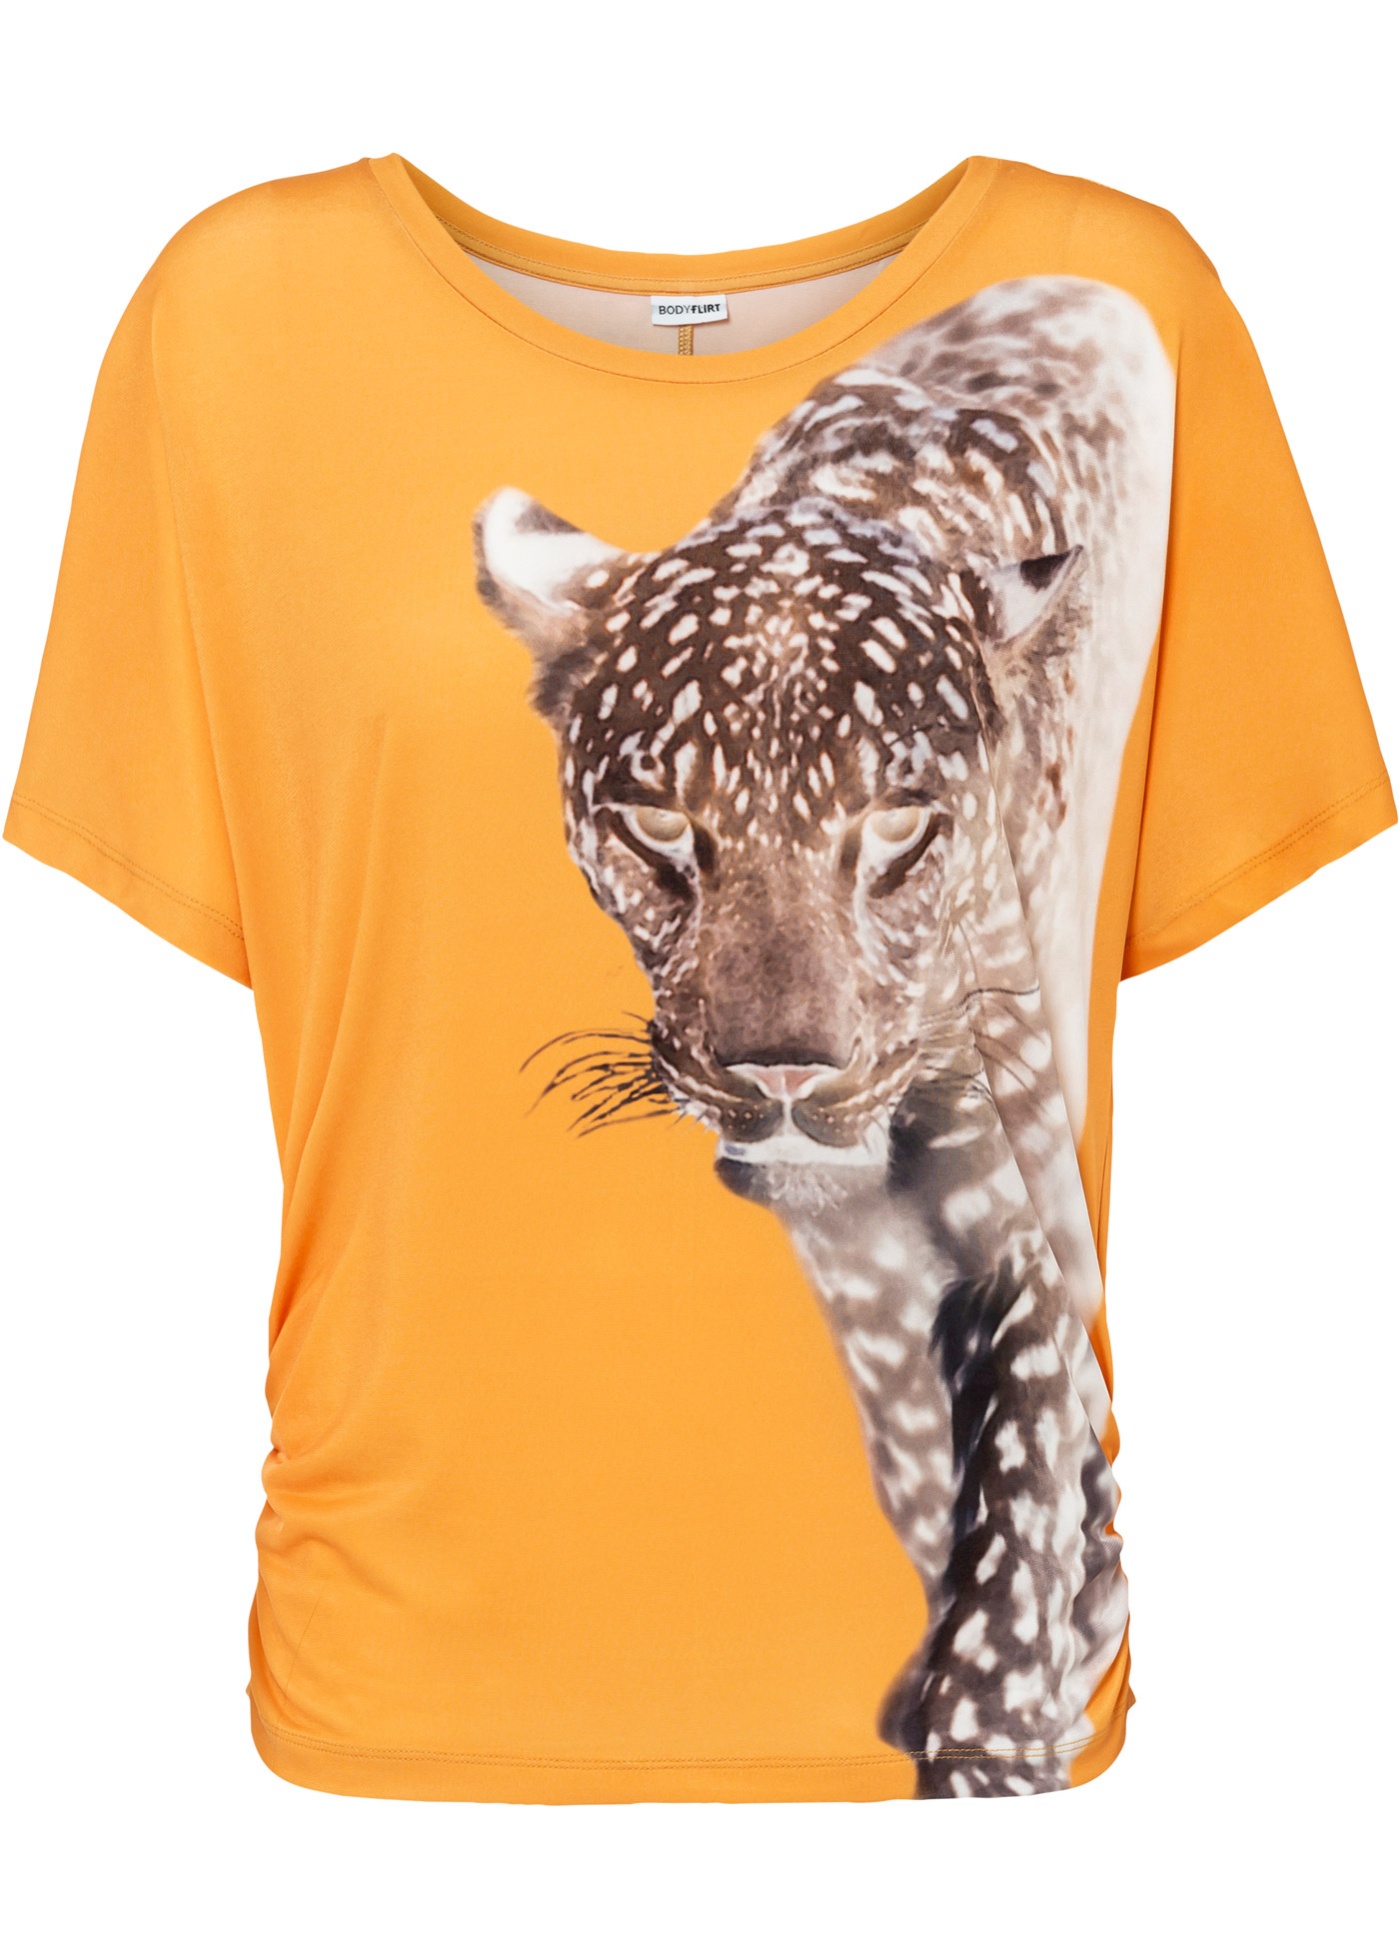 Modisches Shirt mit Rundhalsausschnitt. (96136595) in gelborange bedruckt